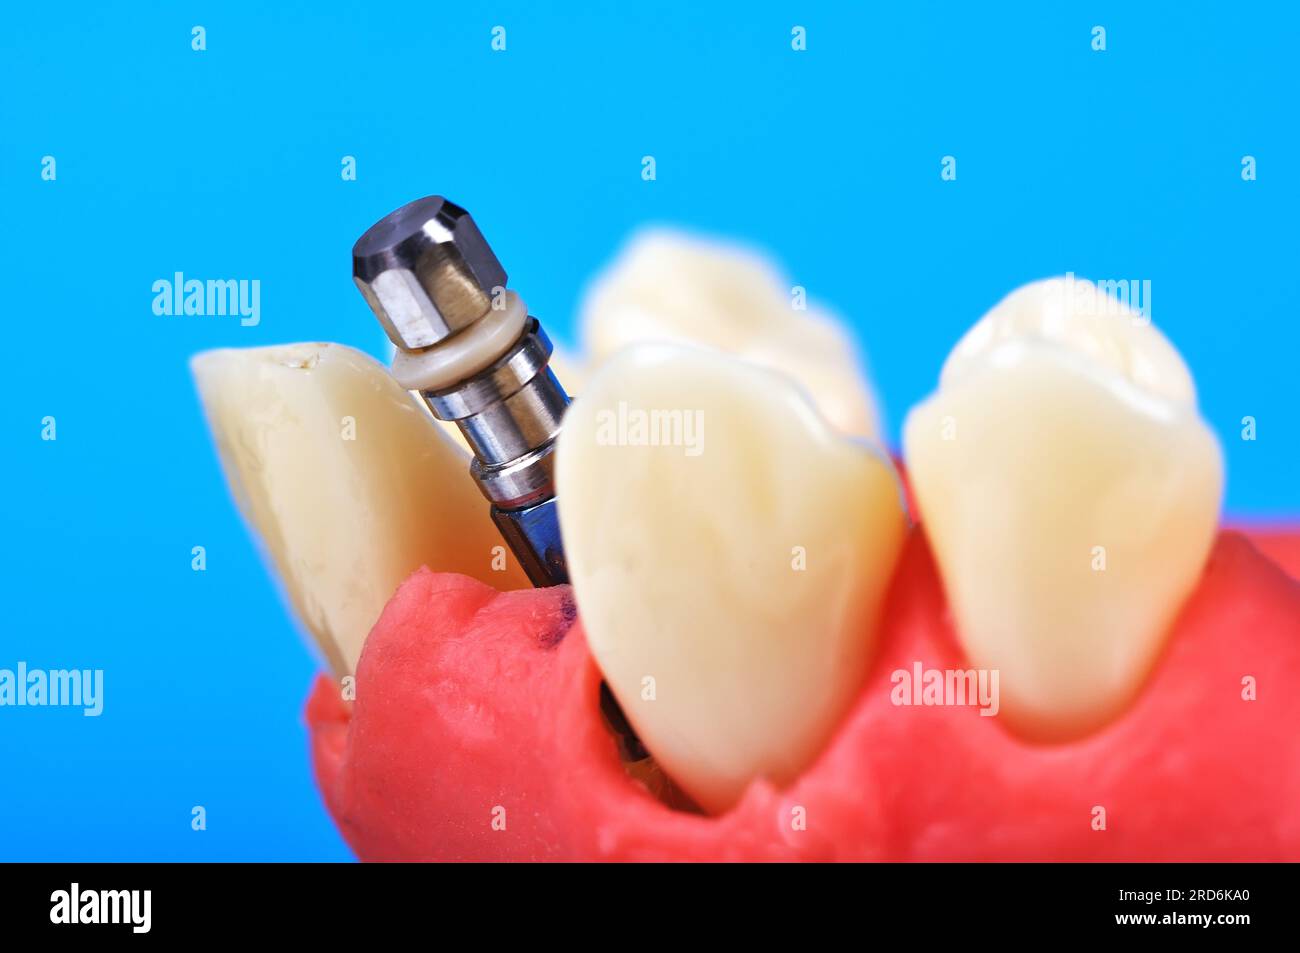 Dente dentale impianto che viene impiantato nell'osso mandibolare, close up Foto Stock